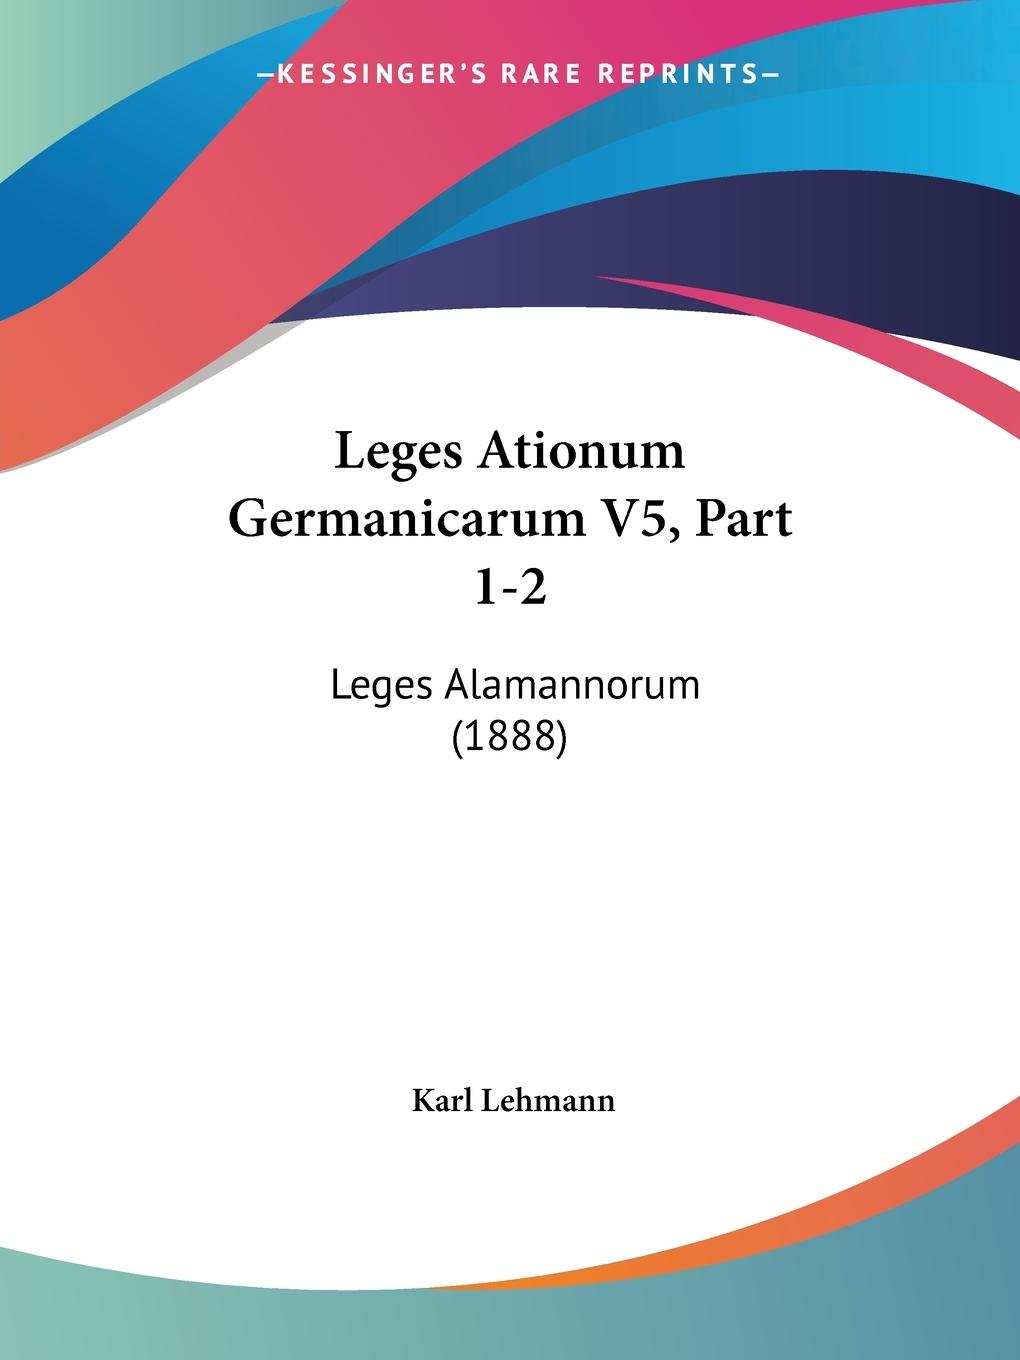 Leges Ationum Germanicarum V5, Part 1-2